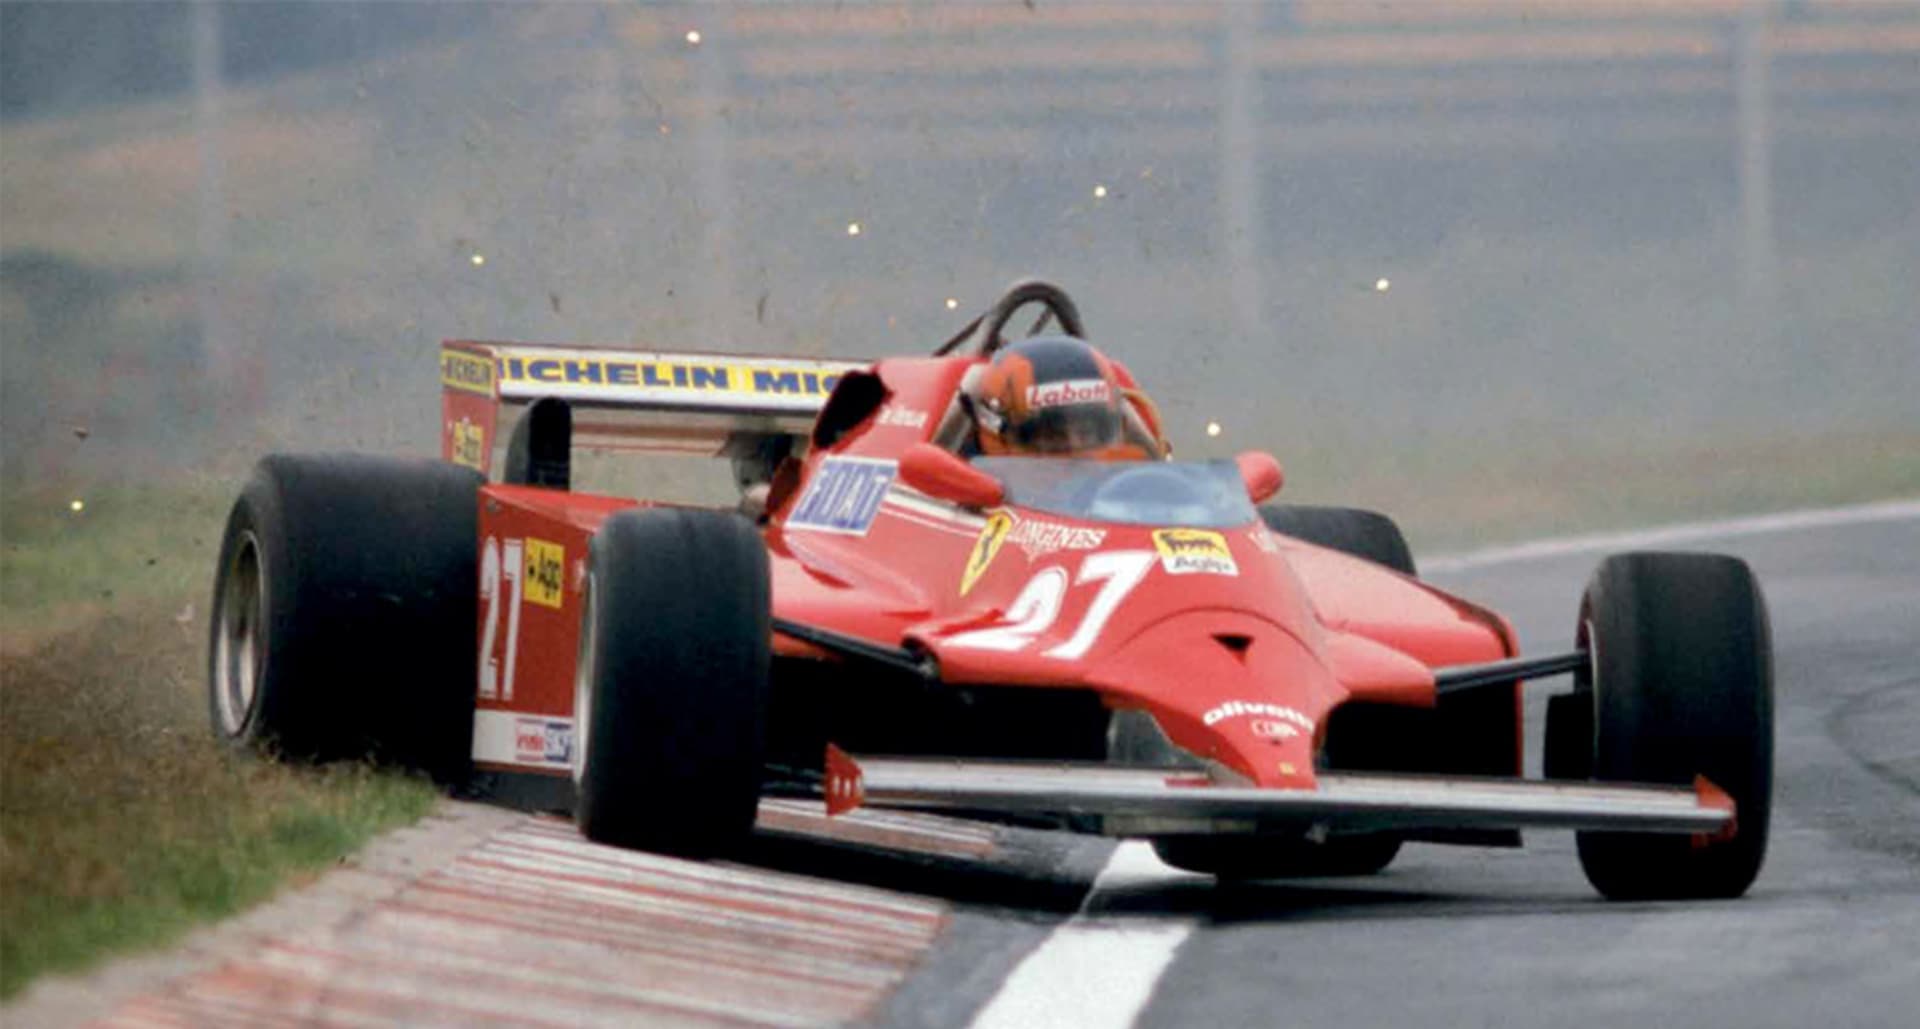 Gilles Villeneuve proslul agresivním, avšak nezákeřným způsobem jízdy.